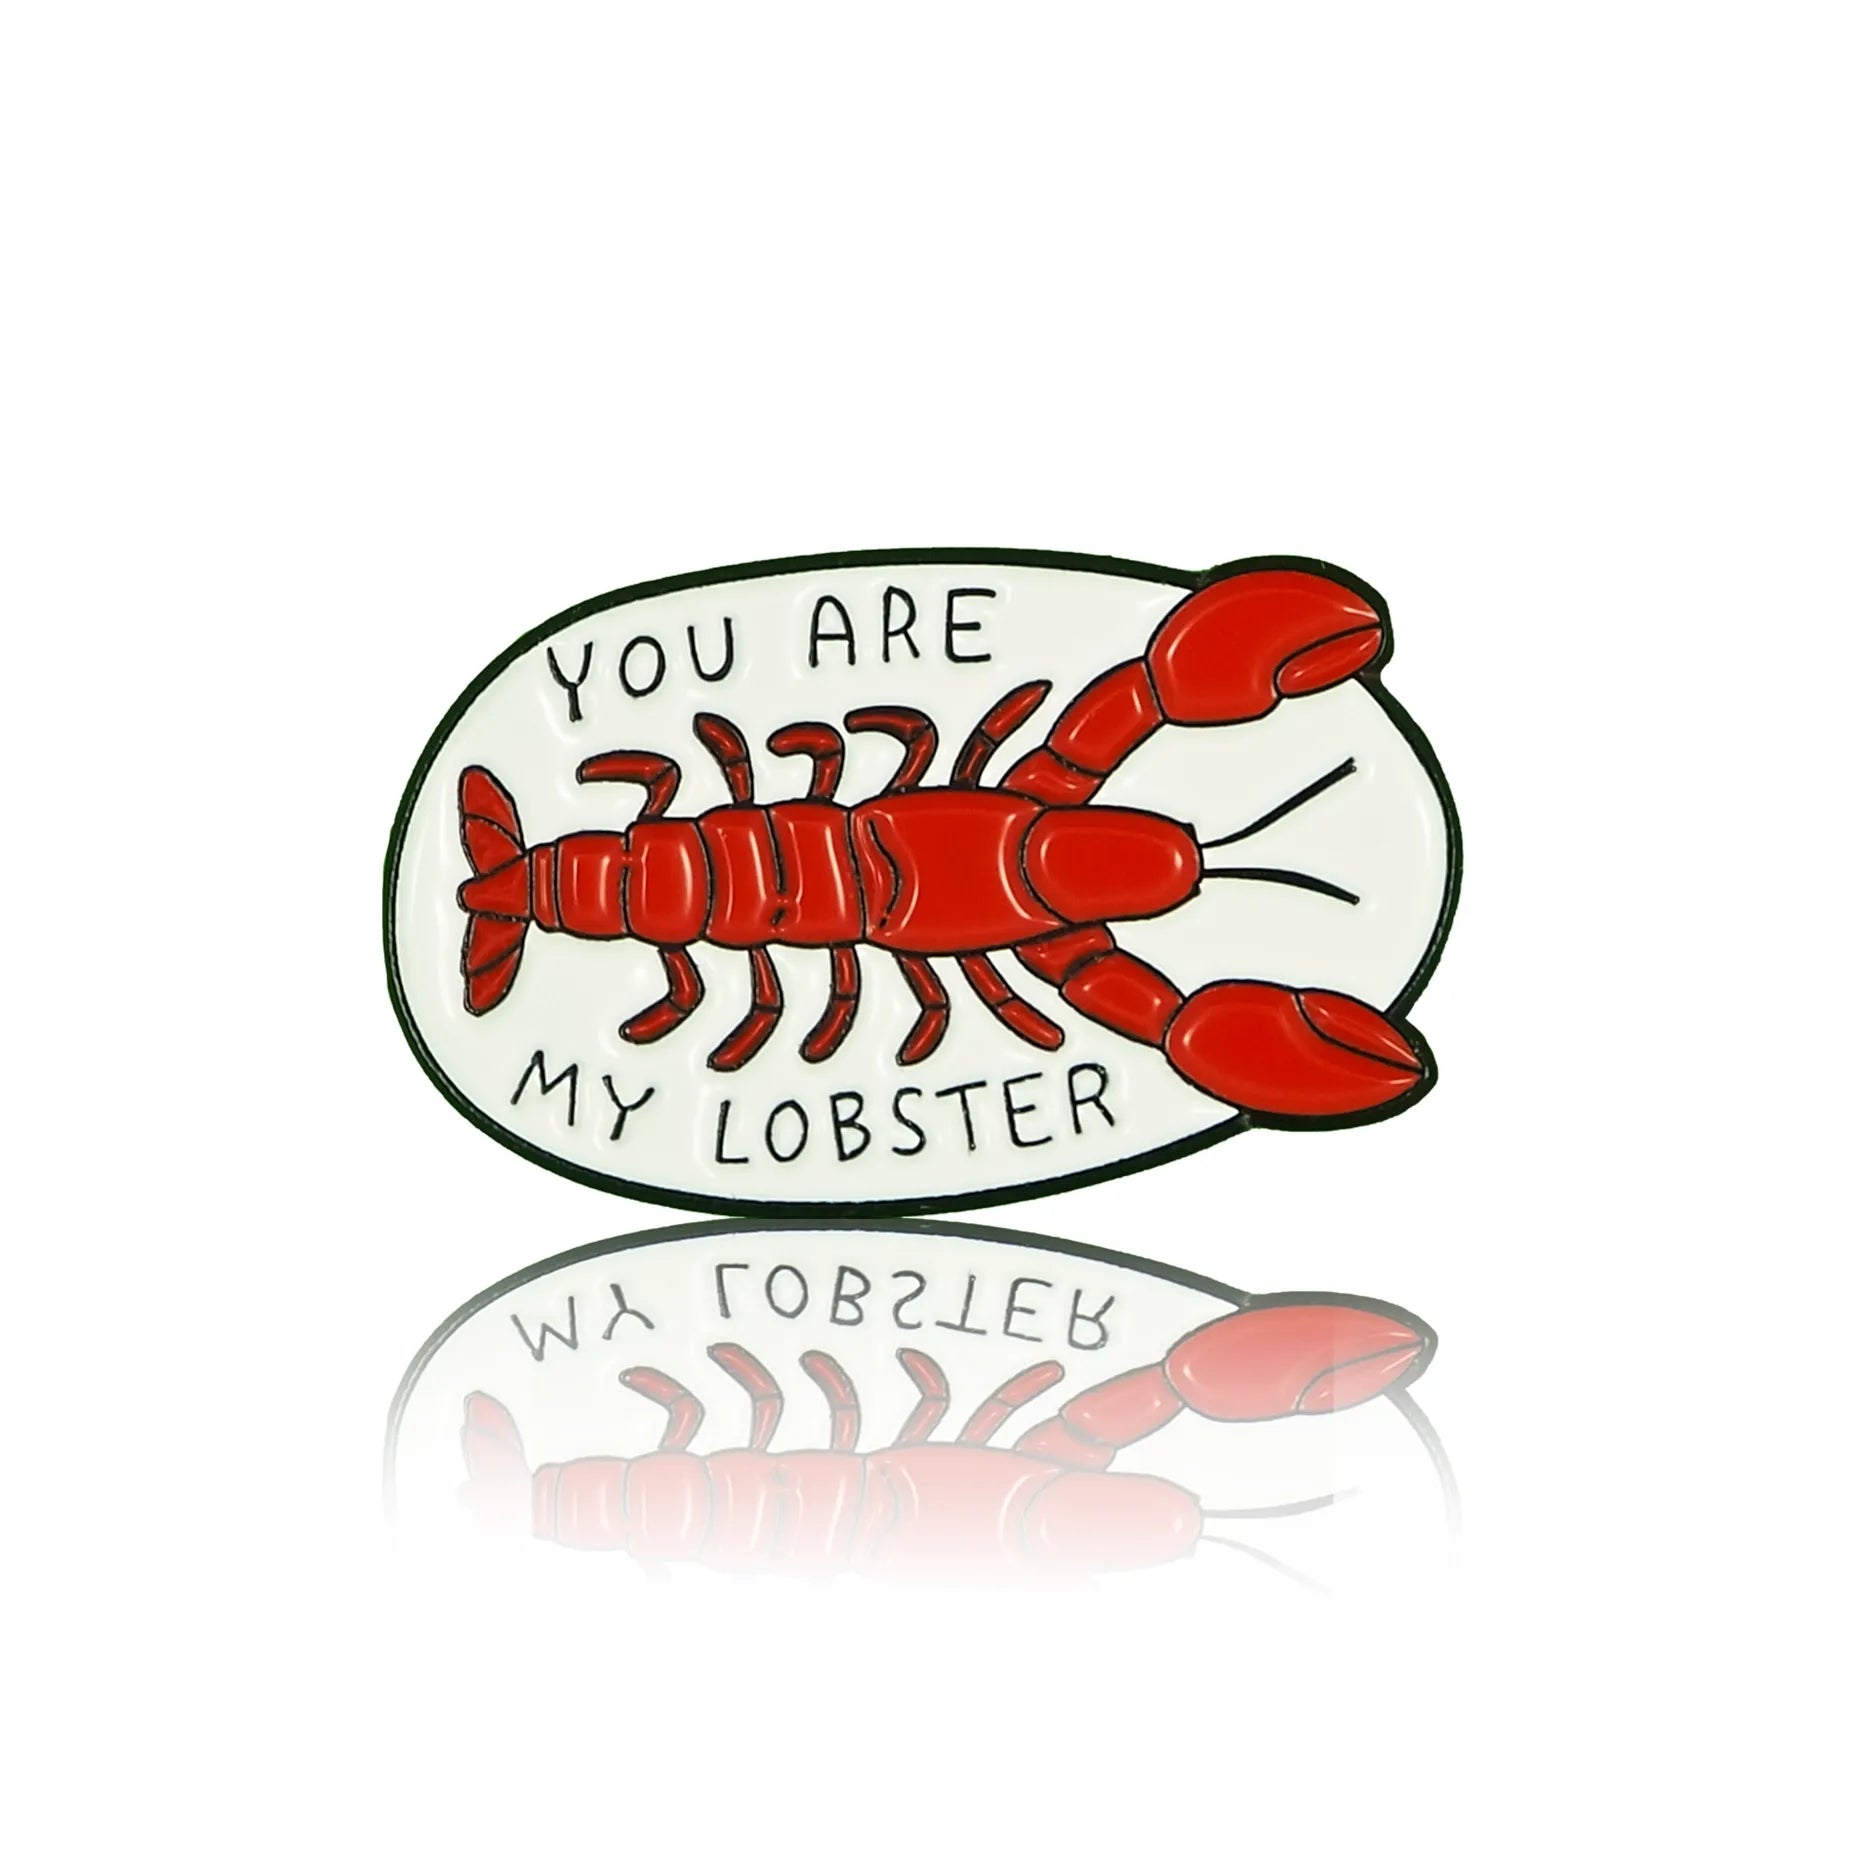 Homar z serialu przyjaciele z napisem "You are my lobster"